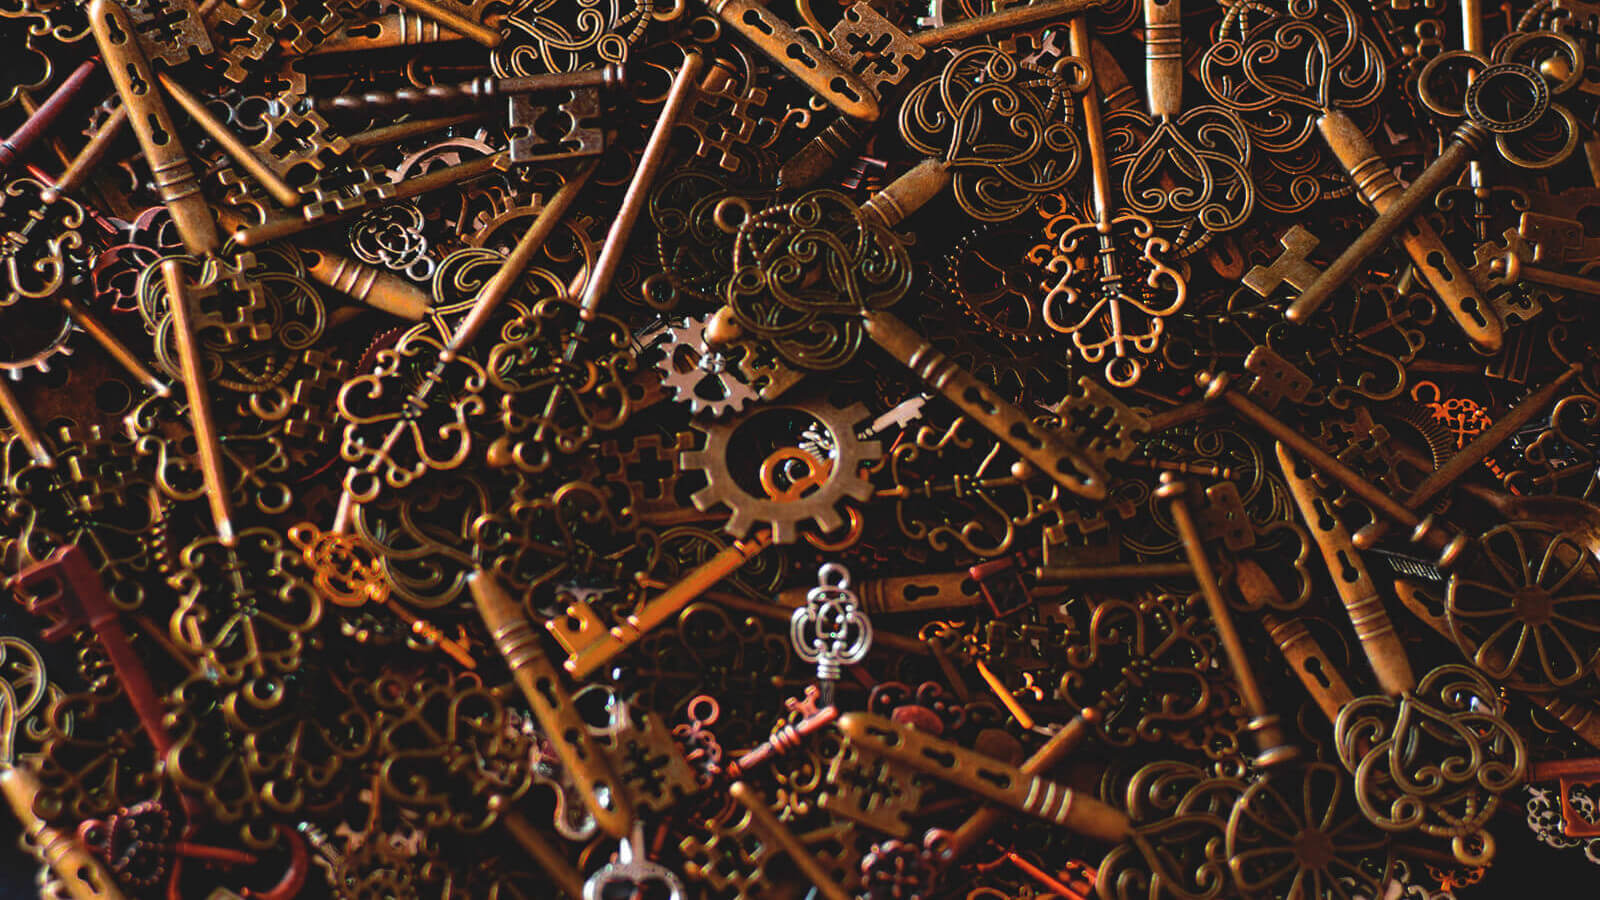 brass keys in a big pile